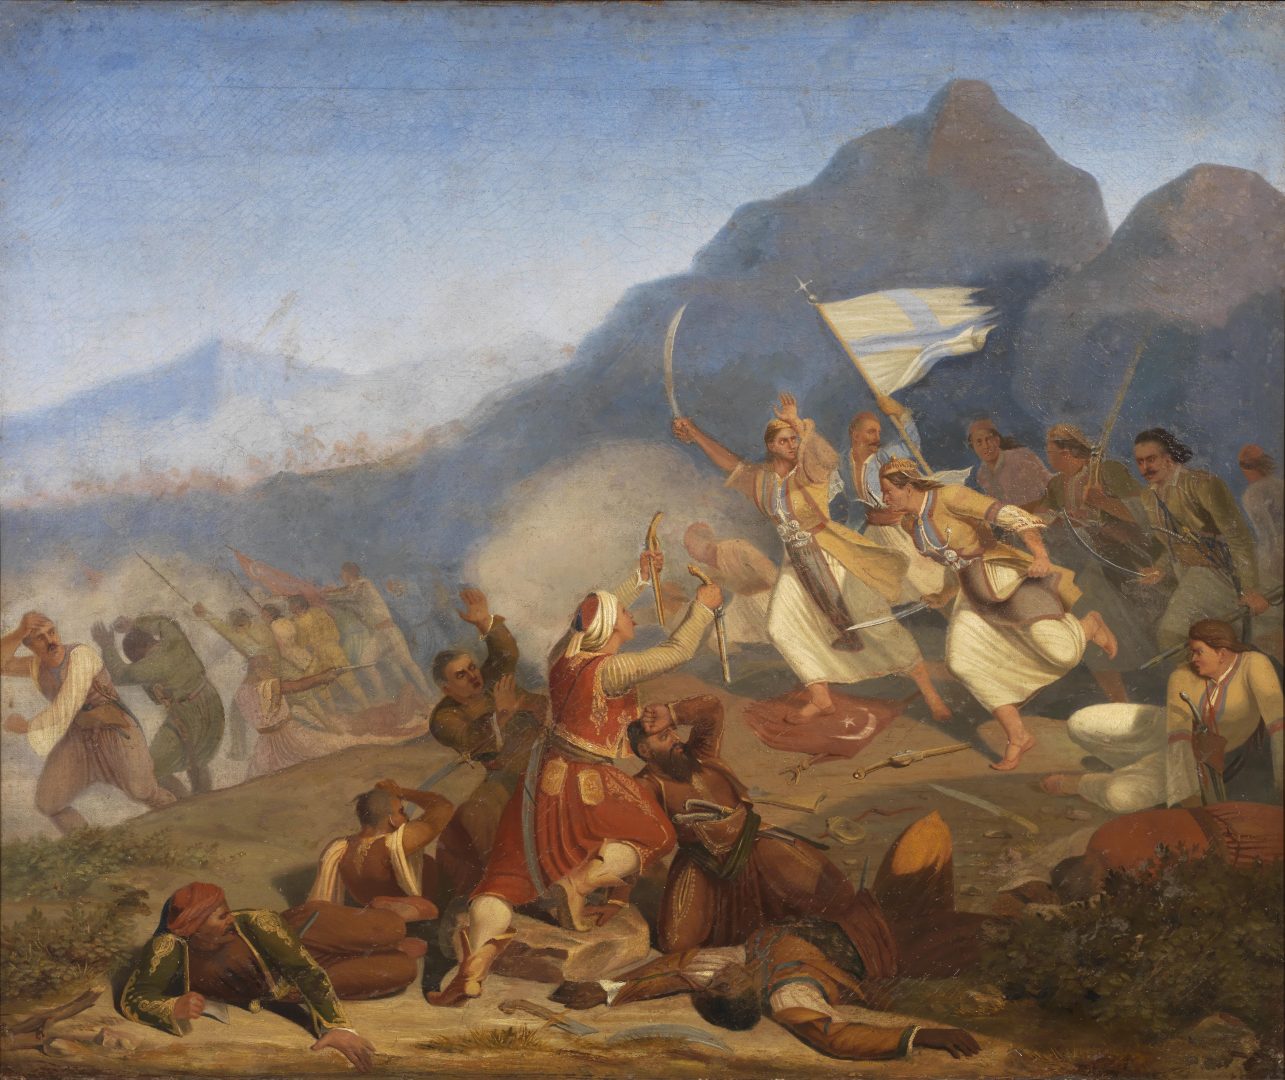 ΣΥΝΕΔΡΙΟ | «Ο Πολιτειακός Πατριωτισμός και τα Συντάγματα της Ελληνικής Επανάστασης» 1821-2021